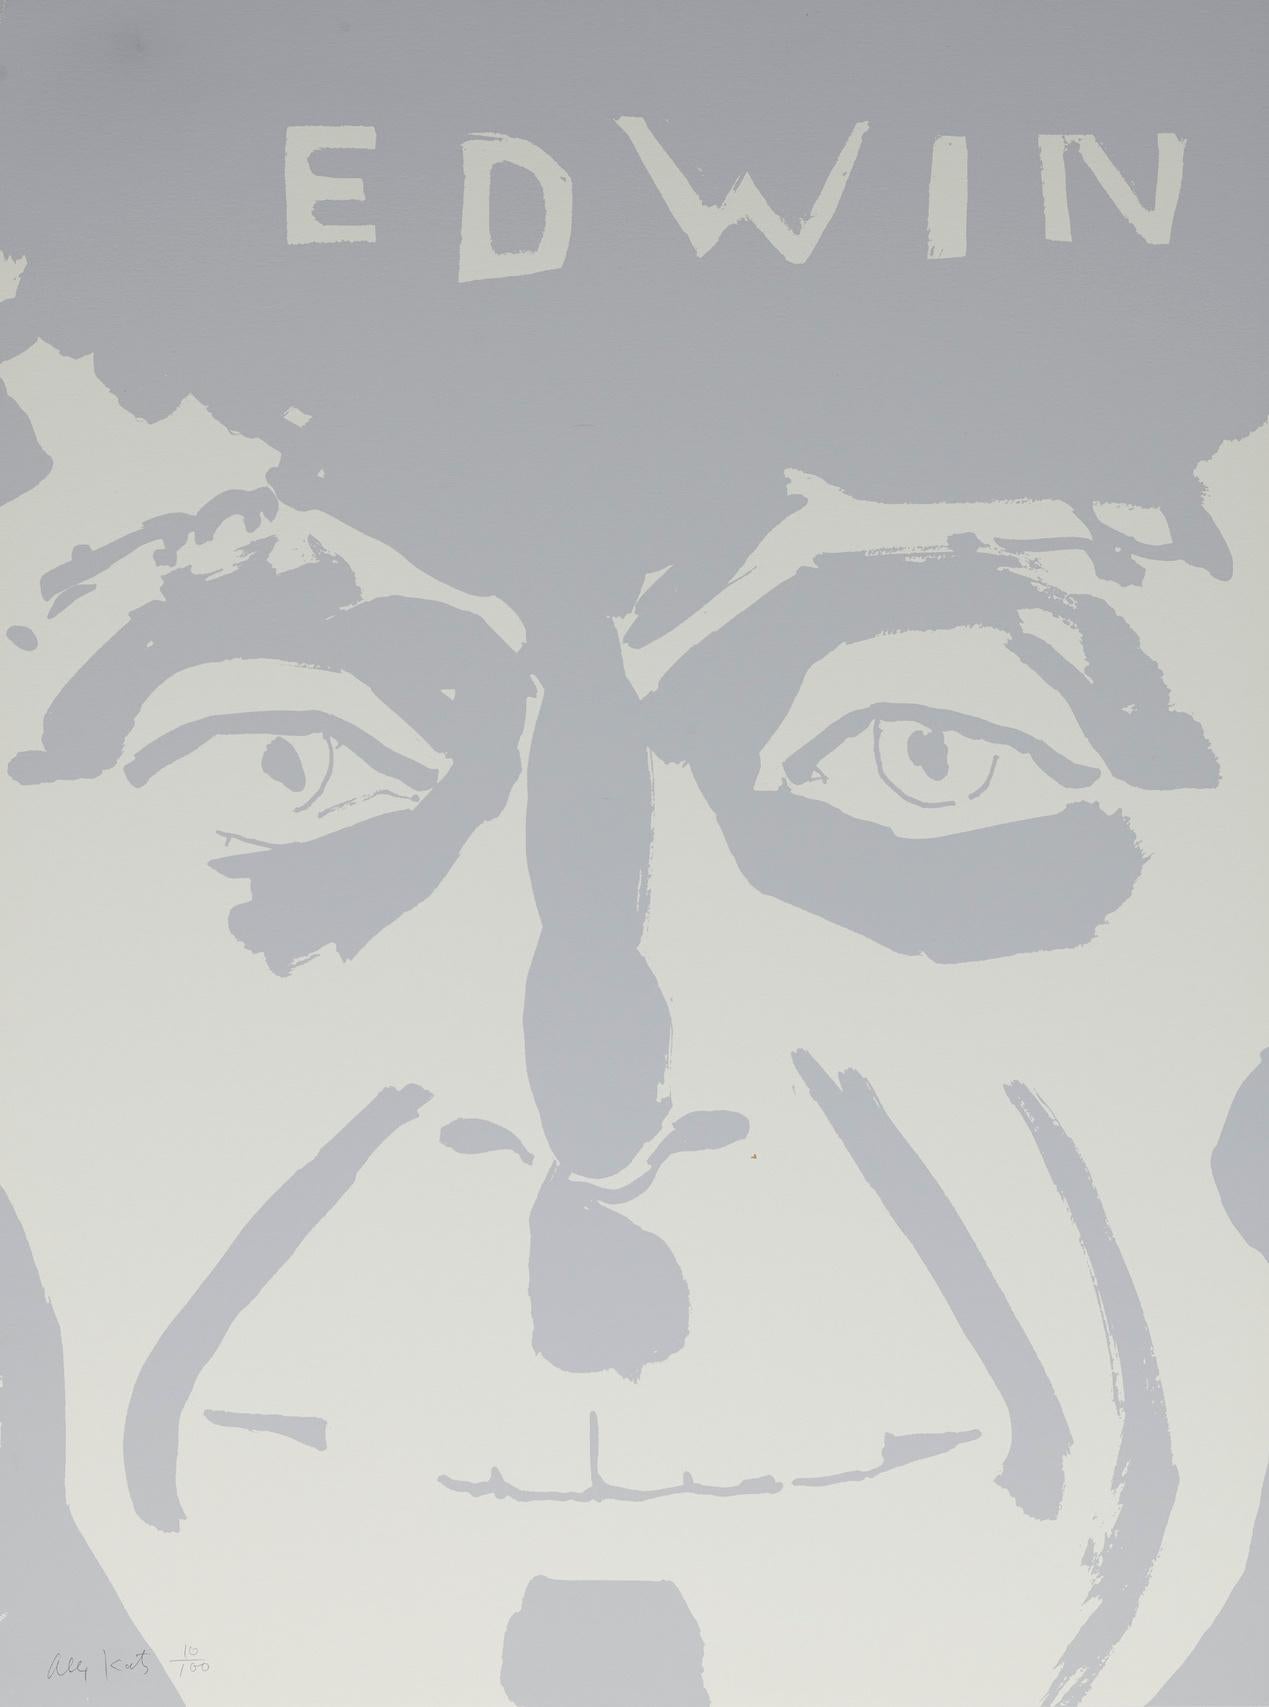 ALEX KATZ (1927-Gegenwart)

Alex Katz' "Edwin" ist ein Siebdruck von 1997, signiert und nummeriert unten links 'Alex Katz 10/100'. Dieses Stück ist in gutem Zustand und misst 32 × 24 Zoll.  Bitte kontaktieren Sie uns bei Fragen!